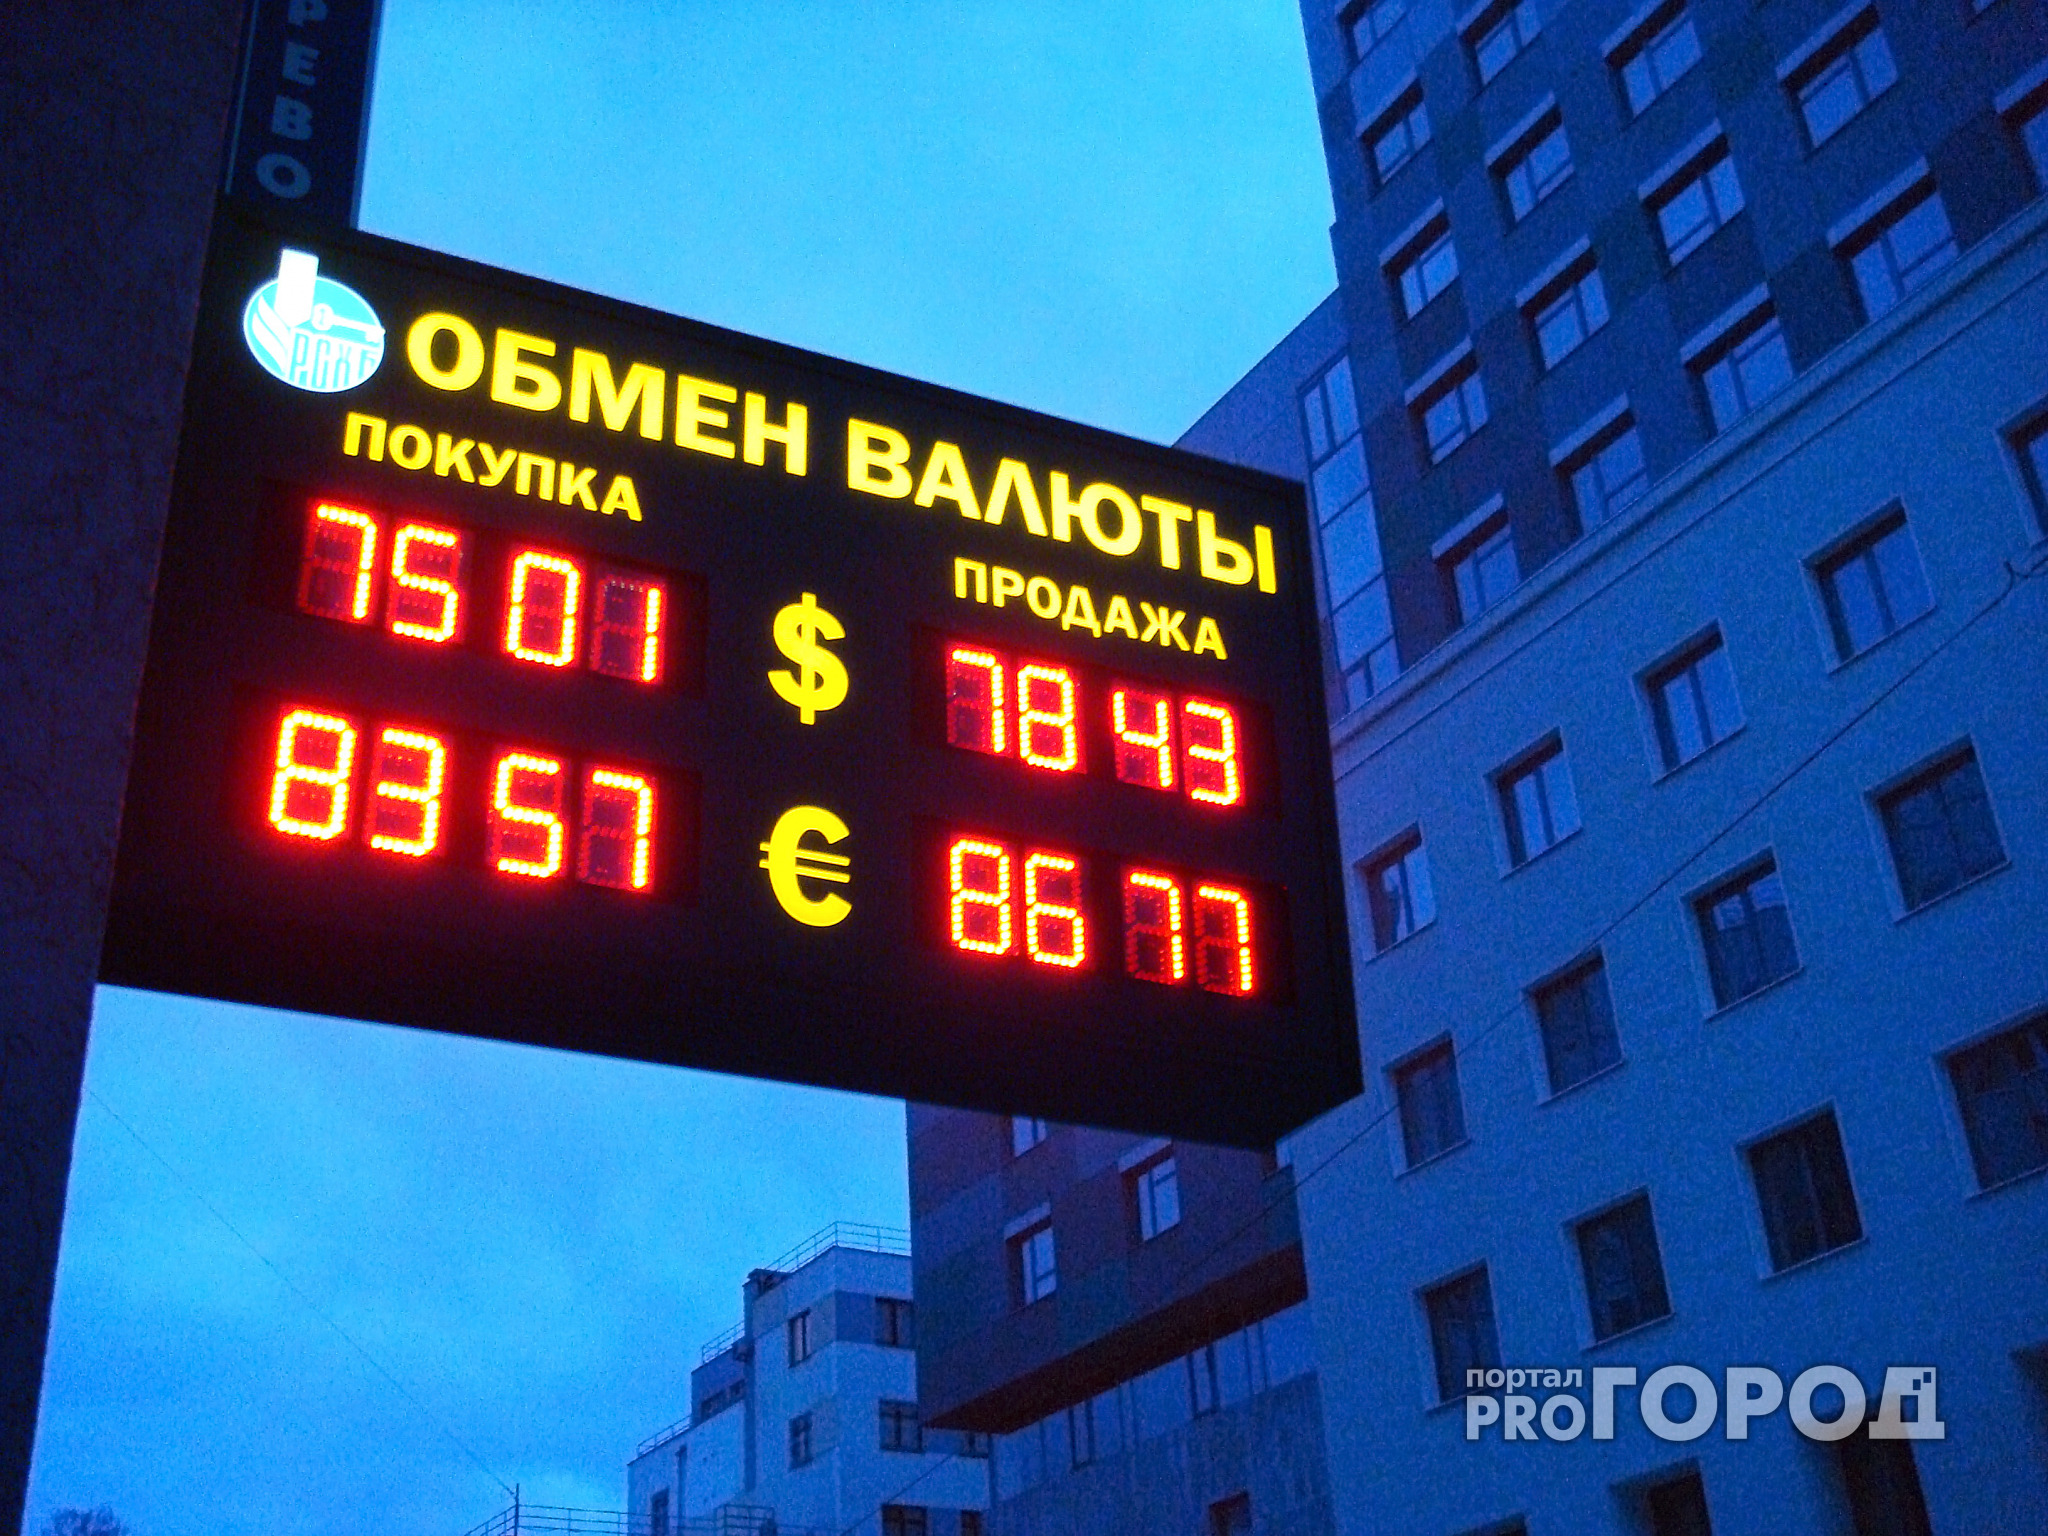 Нижегородцы не спешат скупать валюту из-за падения рубля